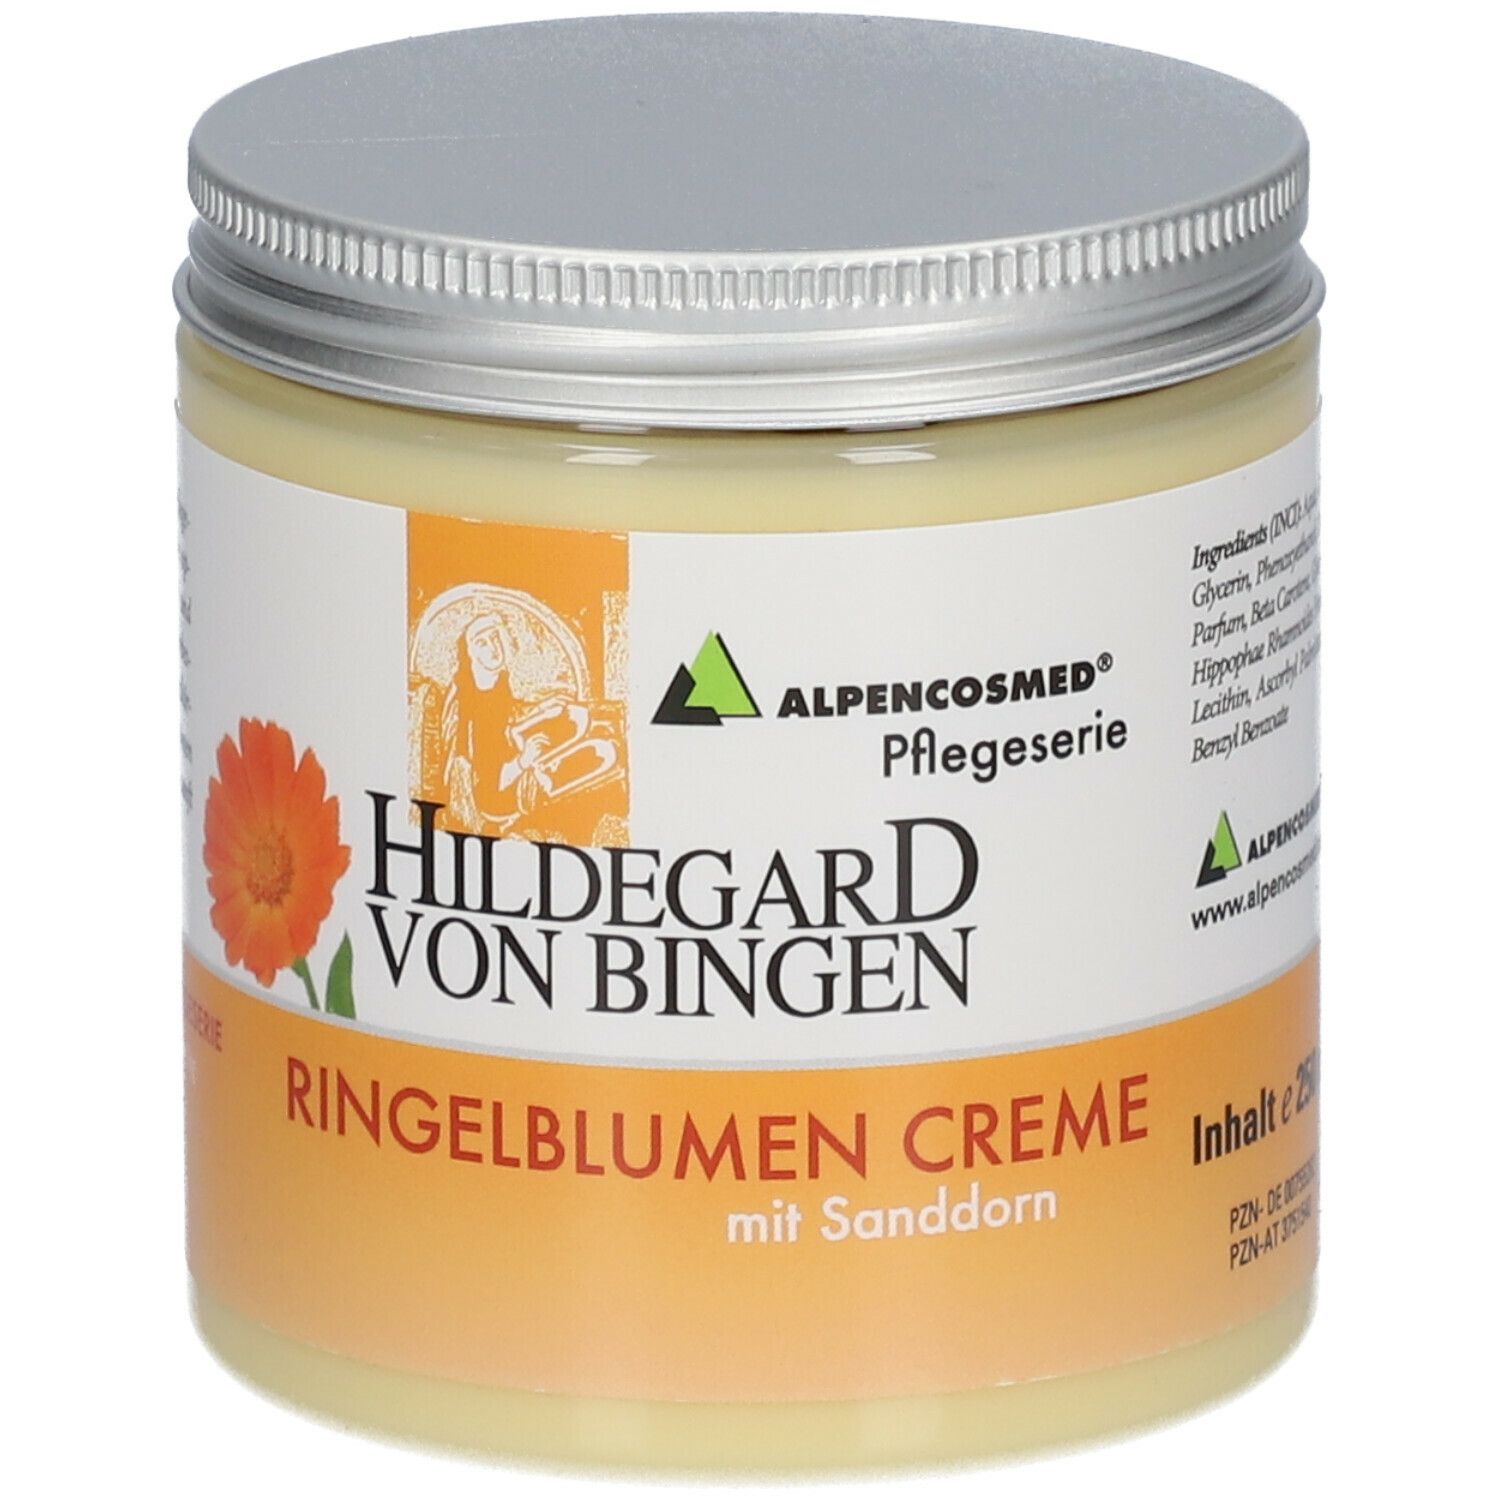 Alpencosmed® Hildegard von Bingen Ringelblumen Creme